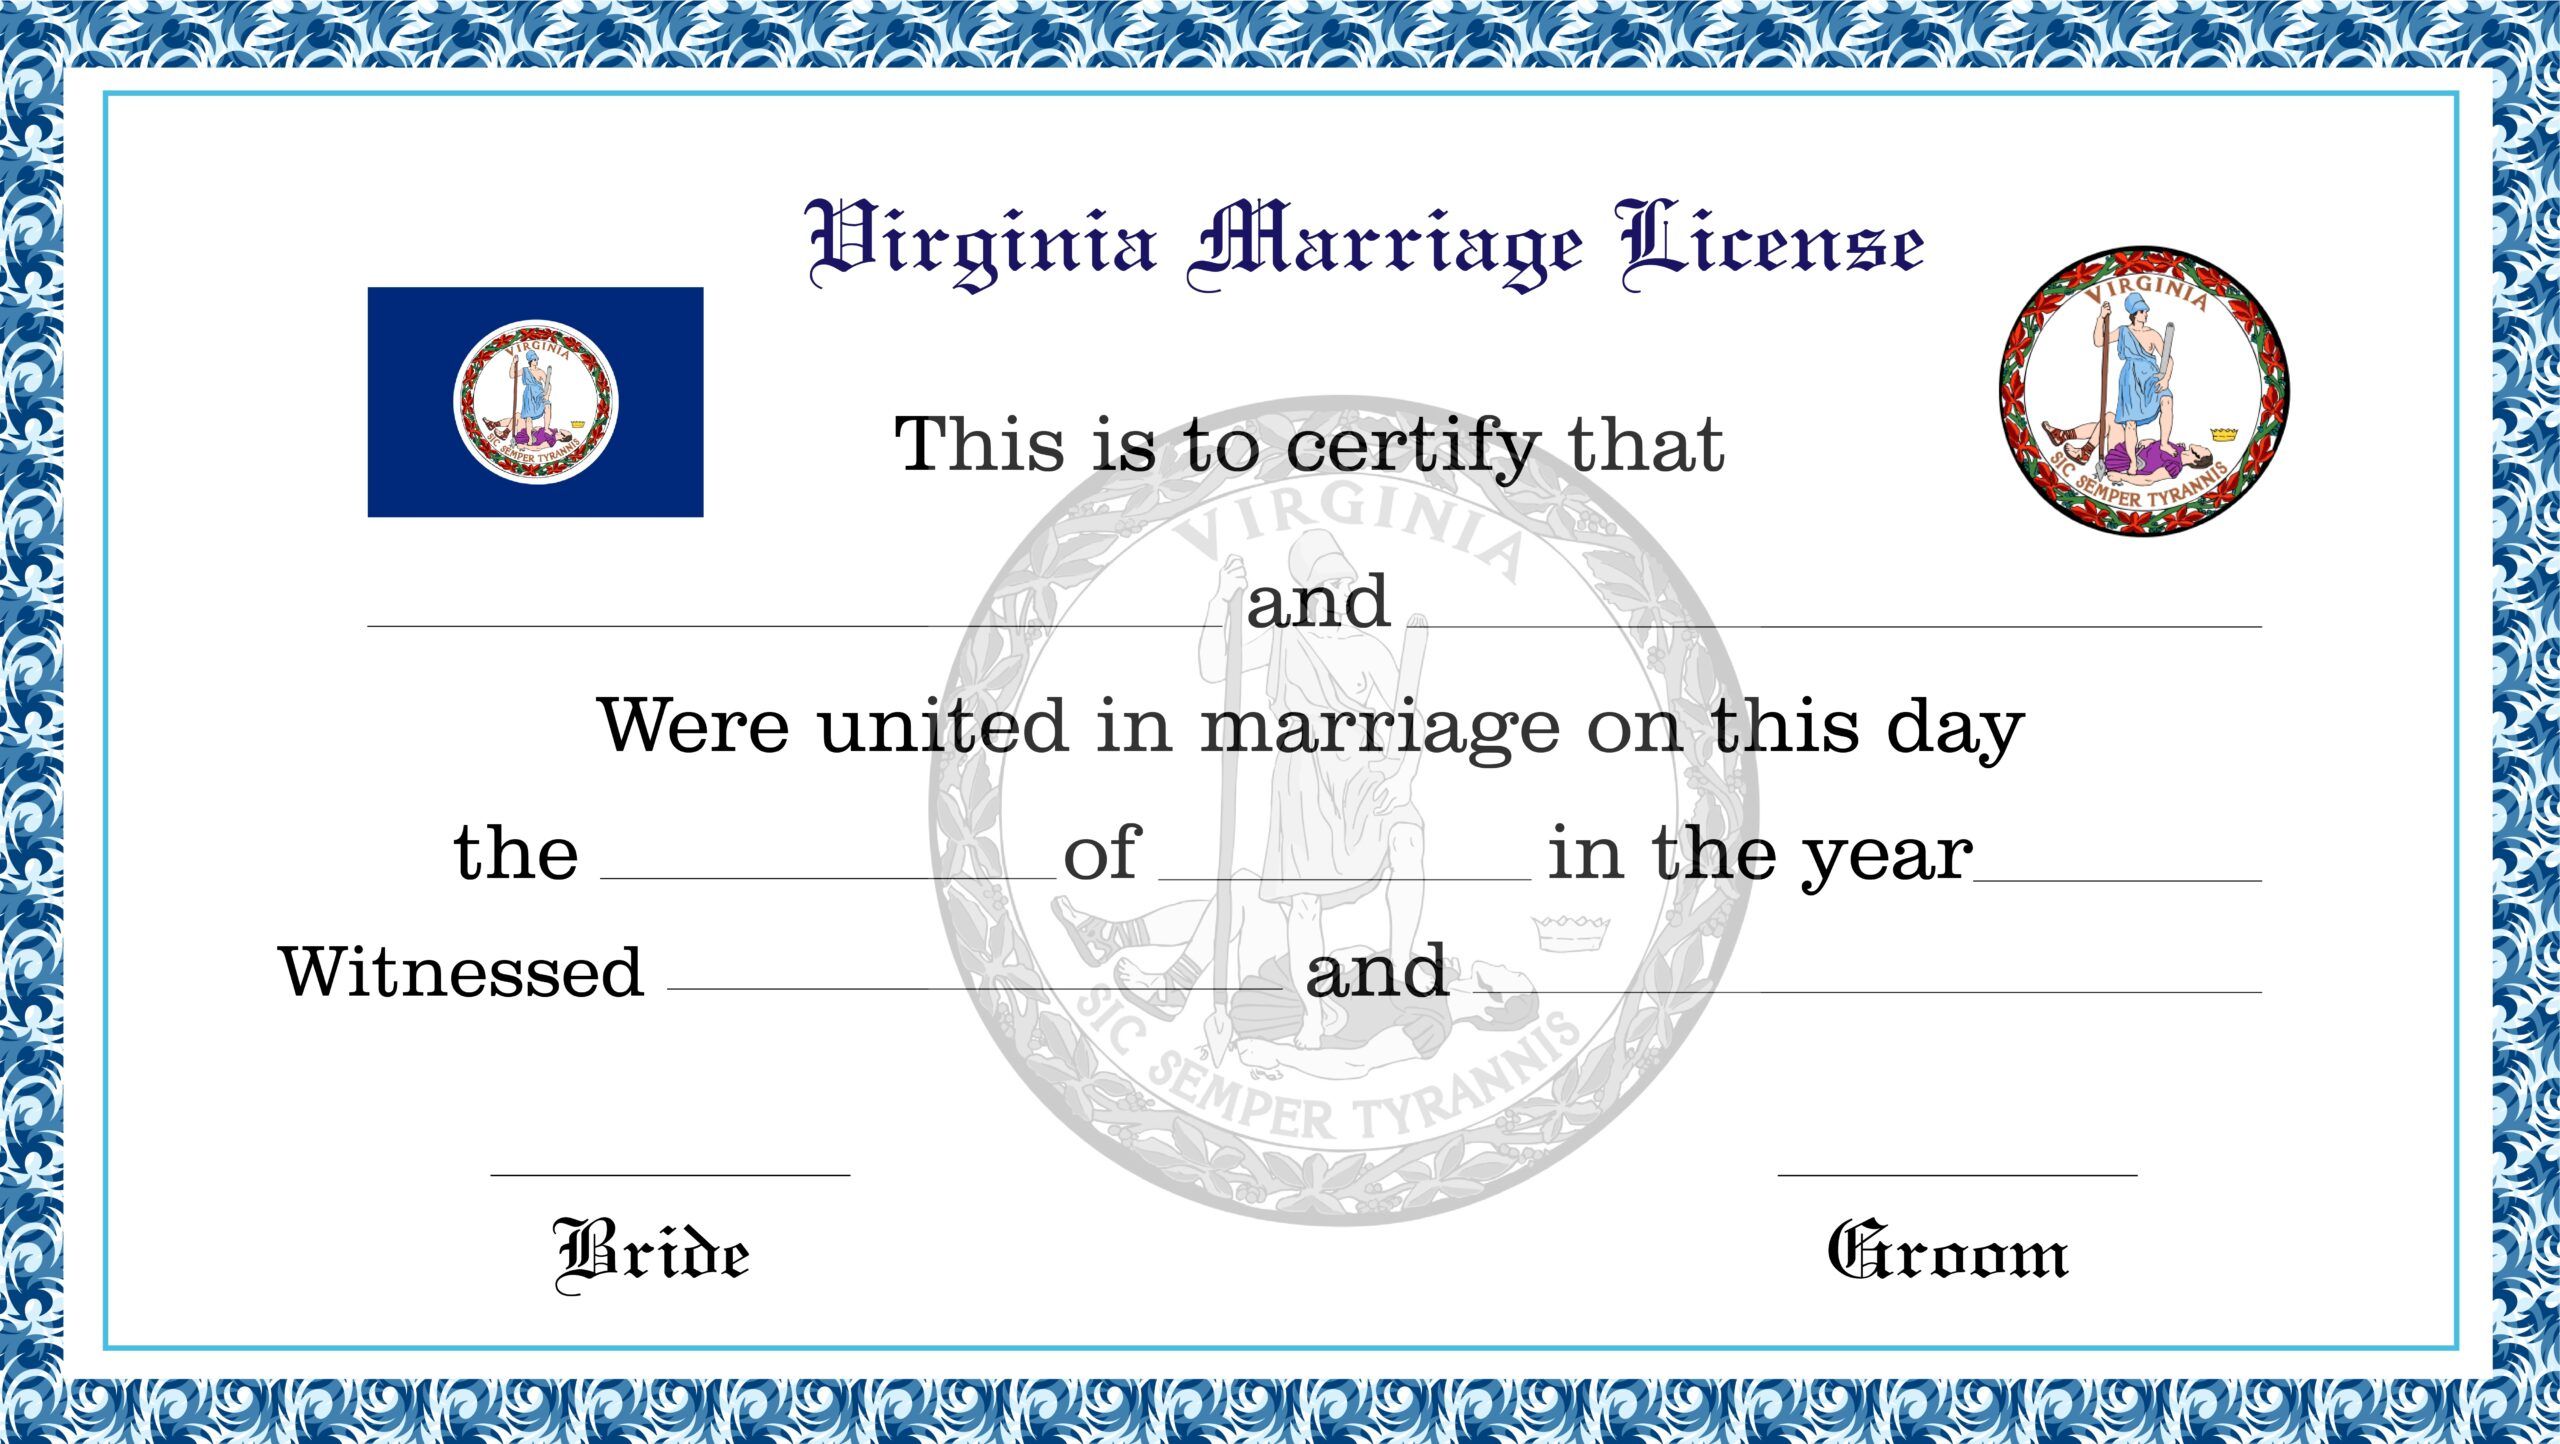 Virginia Marriage License License Lookup